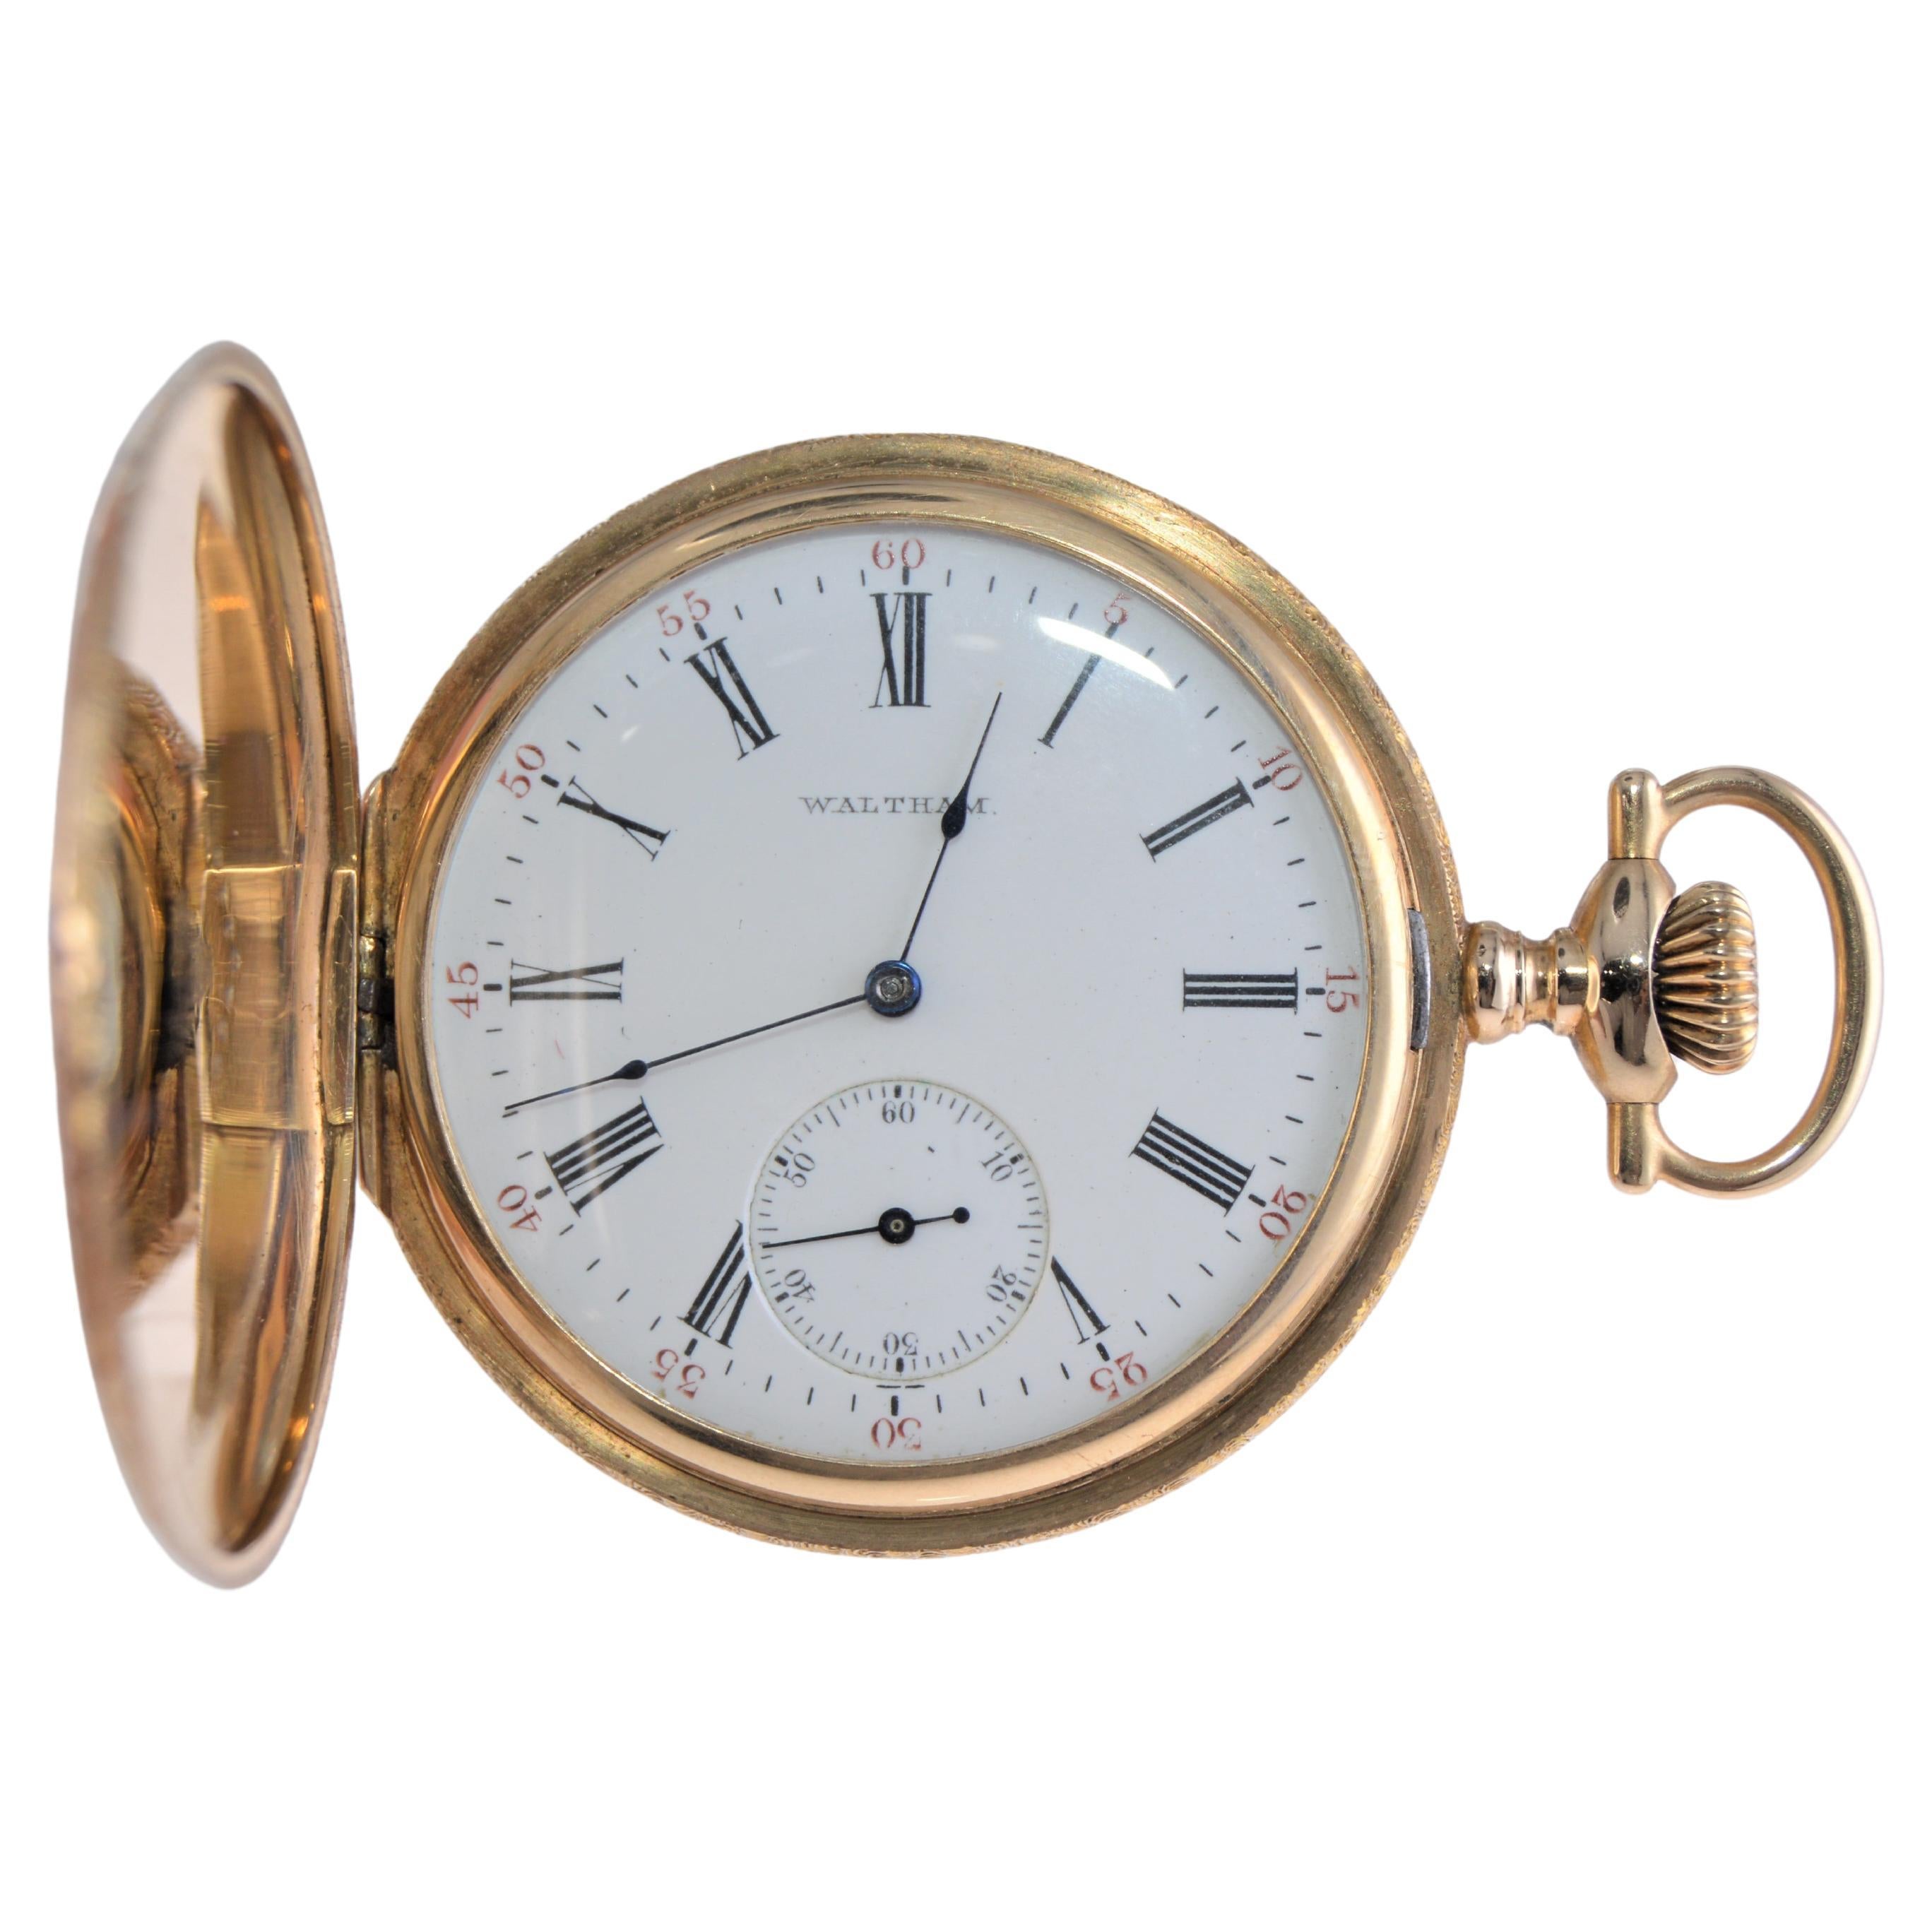 1900 waltham pocket watch